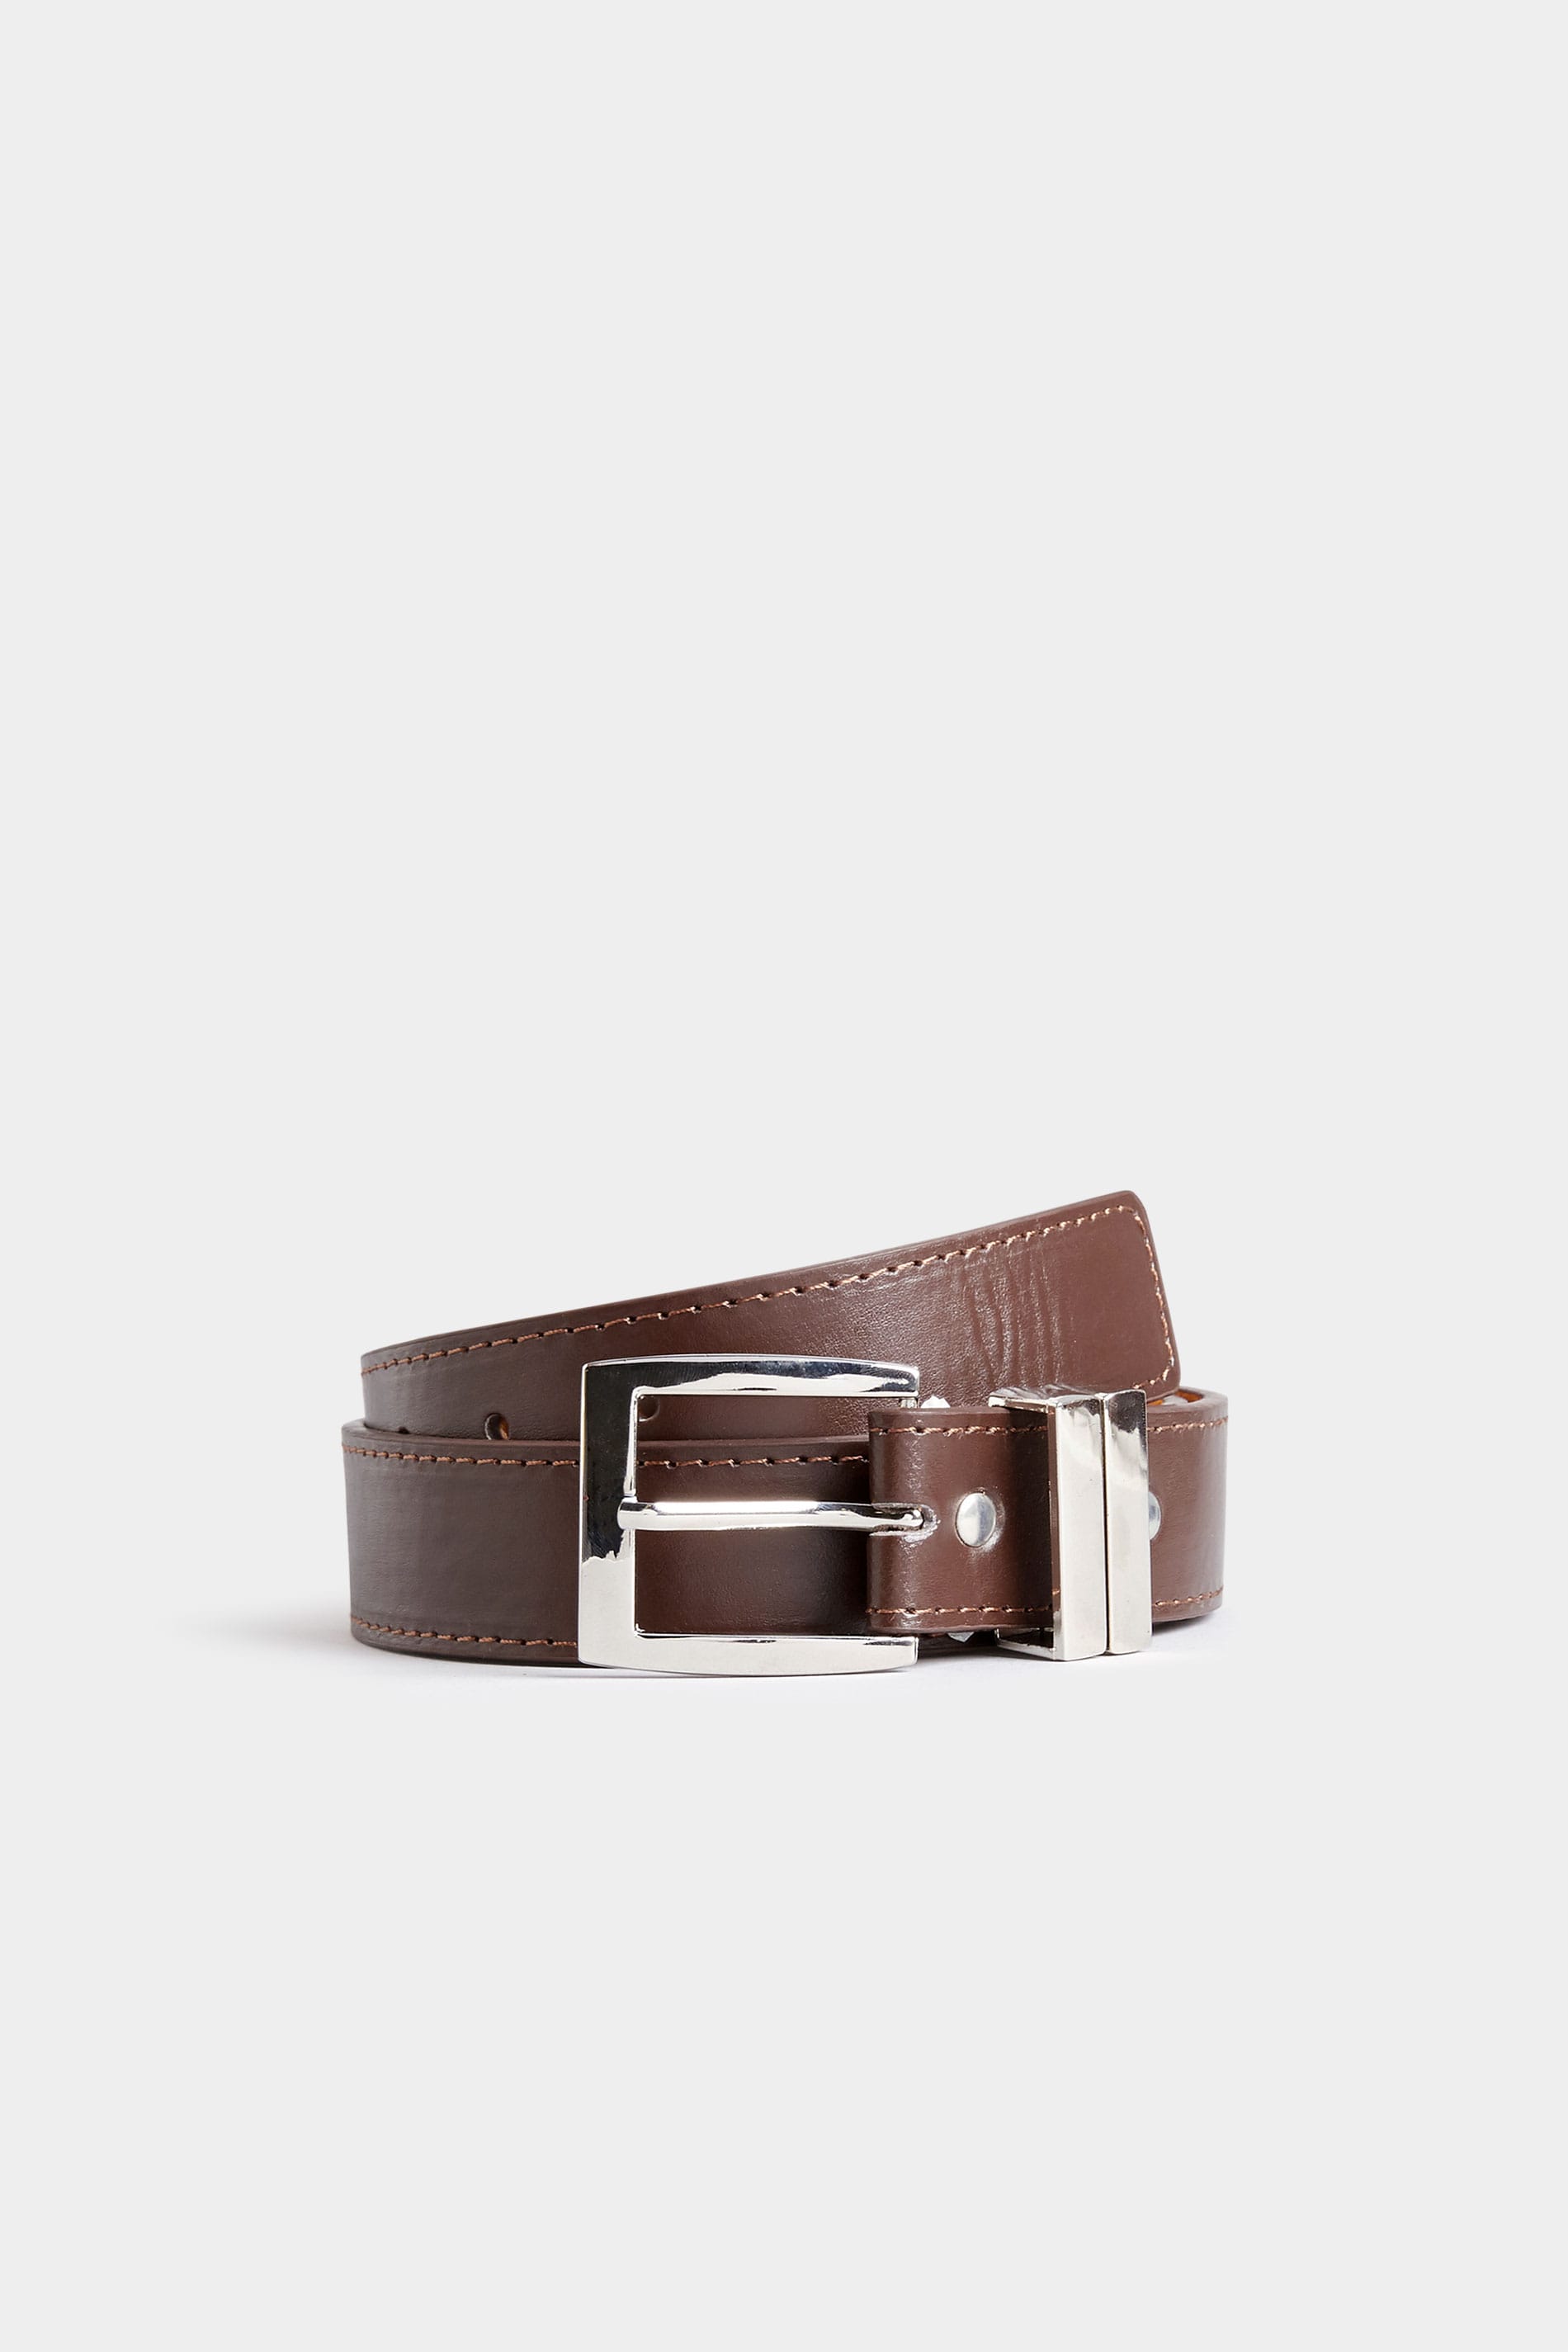 BadRhino Plain Brown Bonded Leather Belt_7d63.jpg